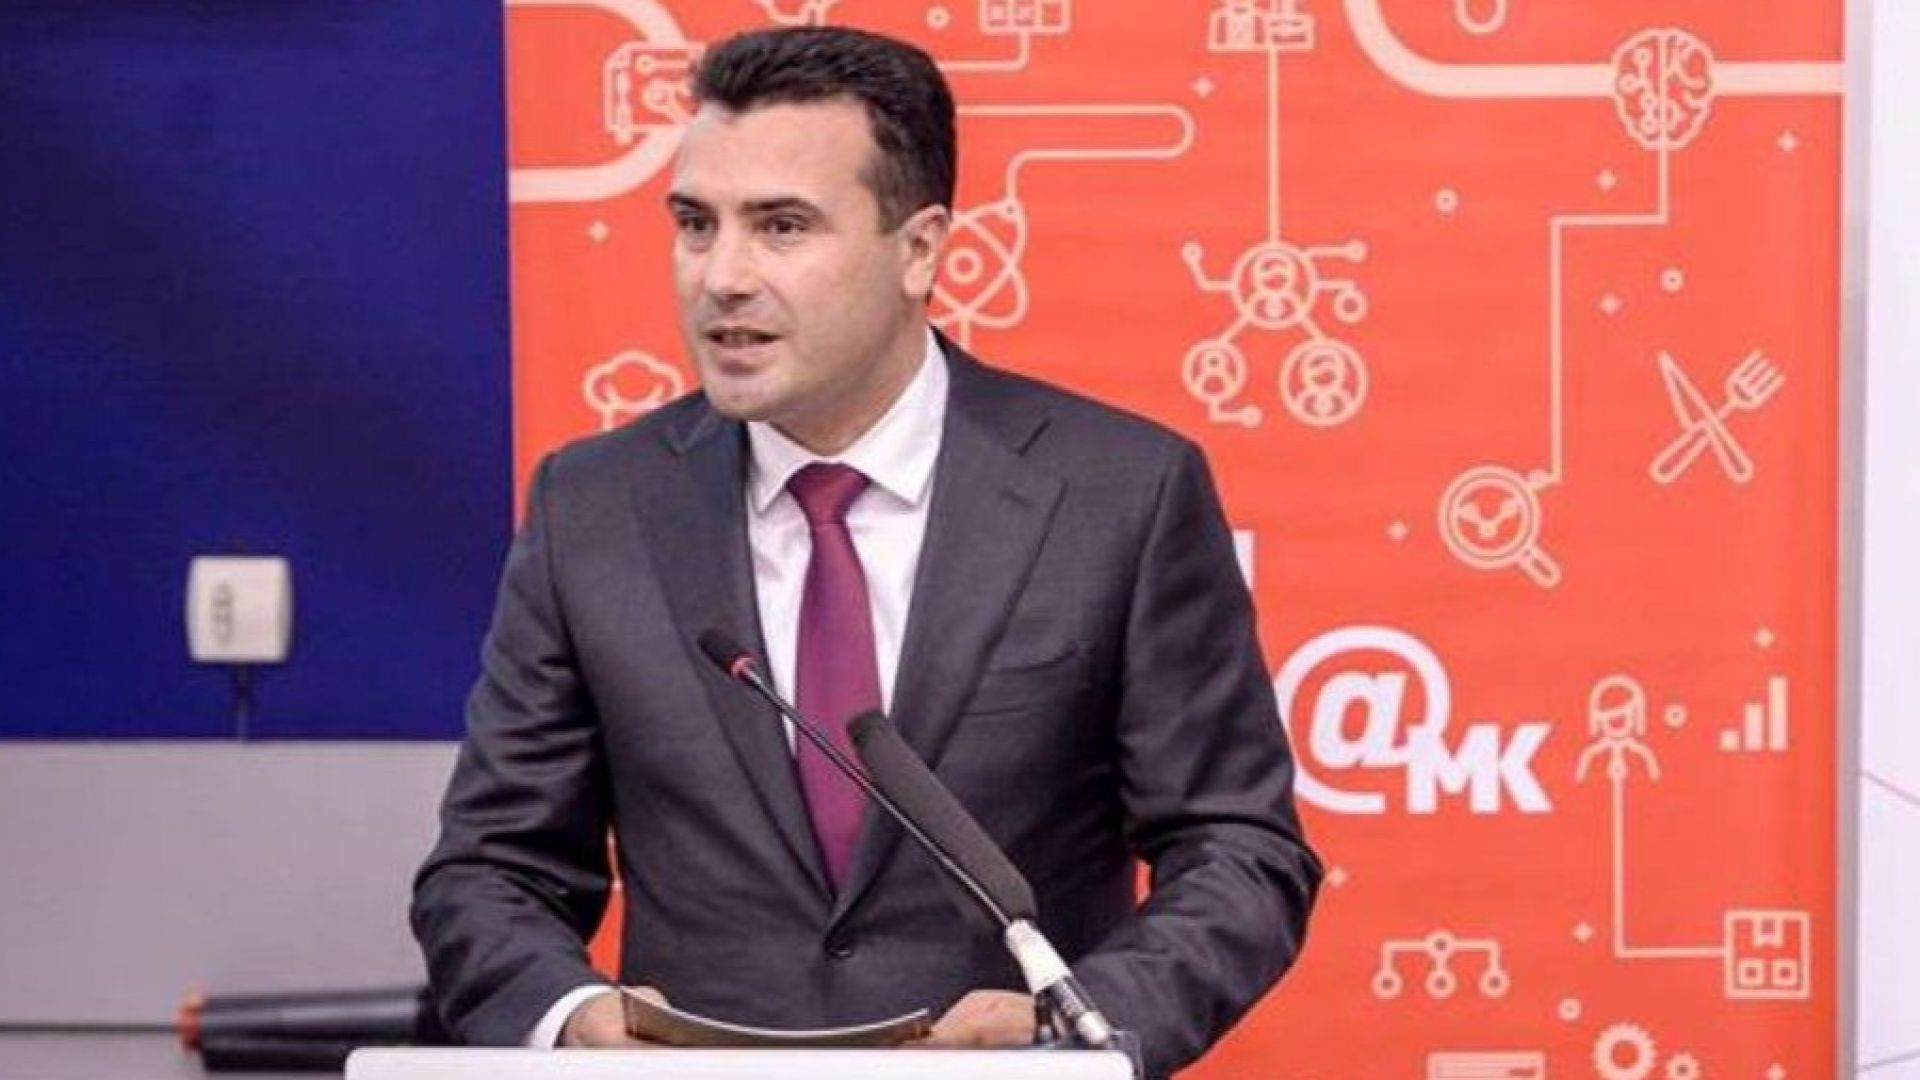 Зоран Заев призова опозицията в Македония да поеме отговорност